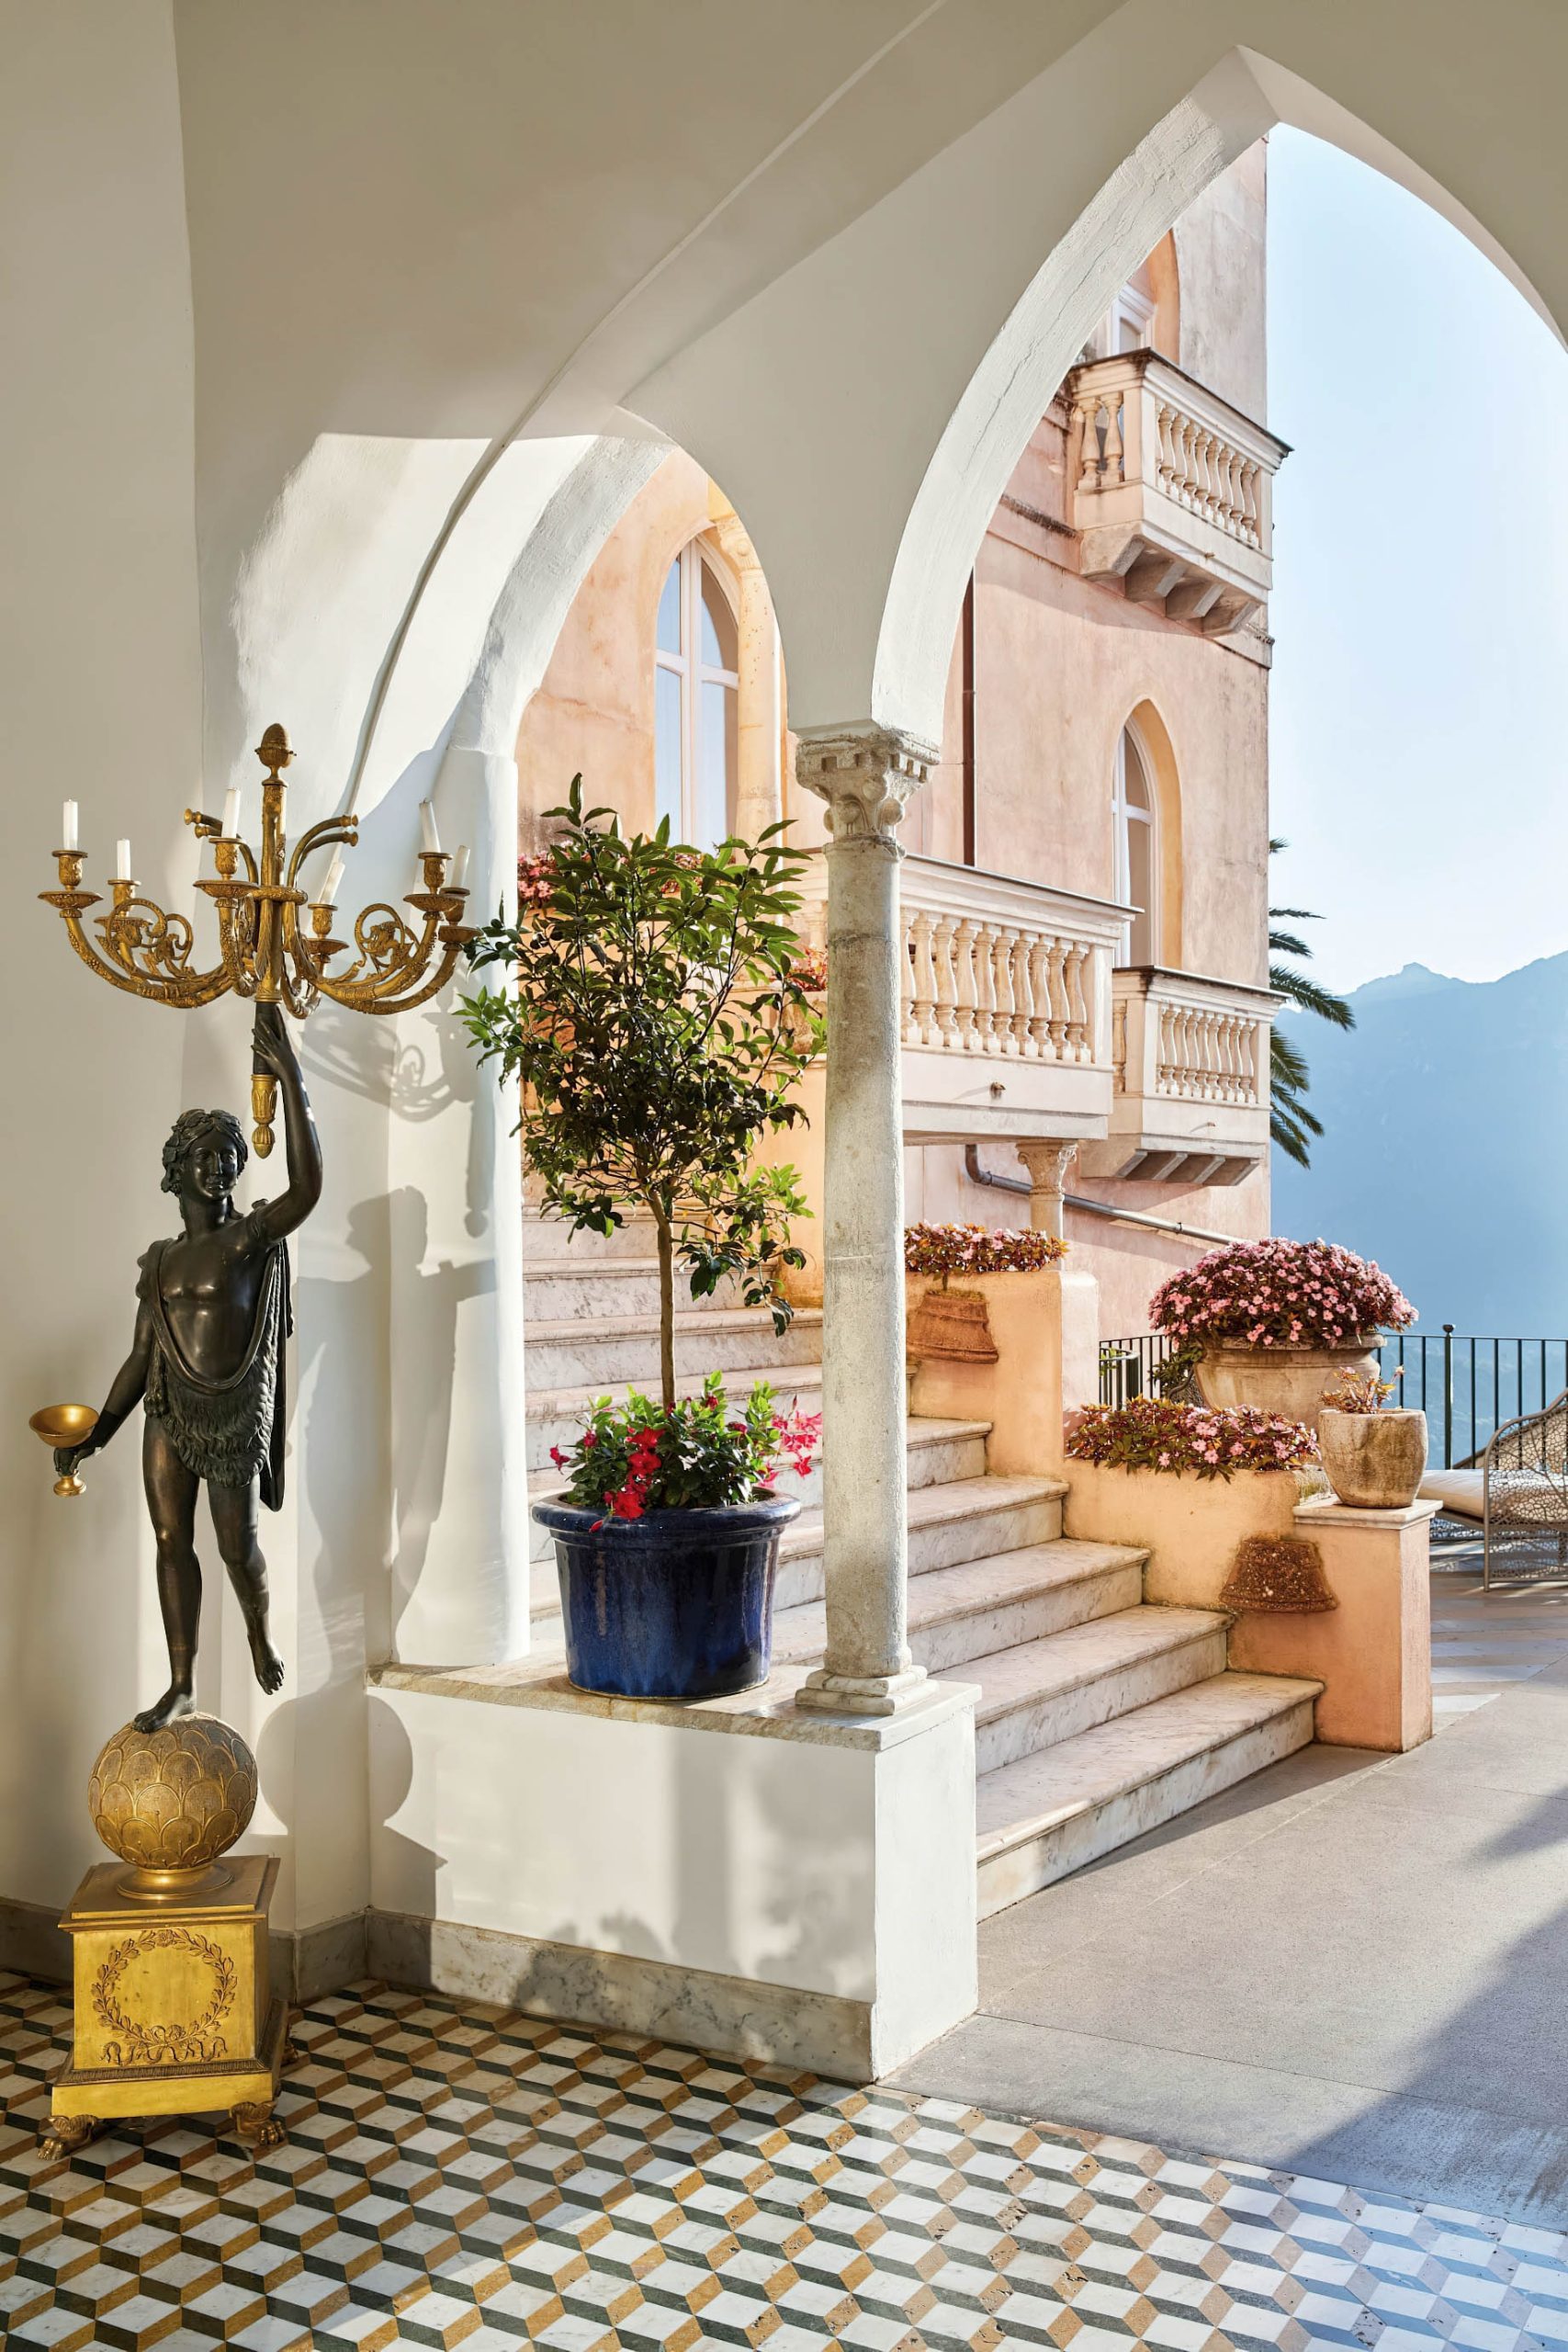 Palazzo Avino Hotel – Amalfi Coast, Ravello, Italy – Entrance